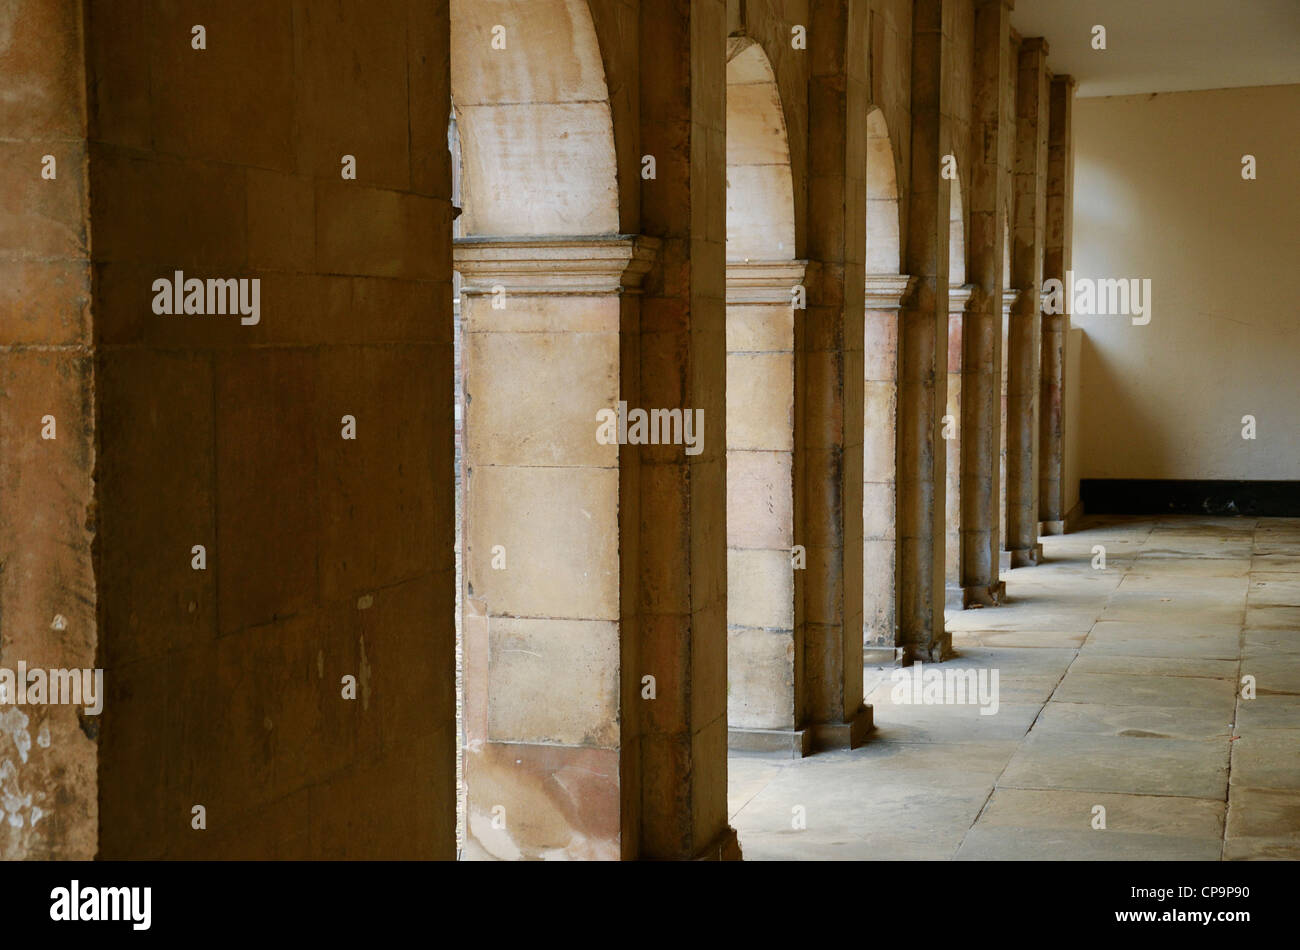 Cambridge college buildings university stone archways Stock Photo